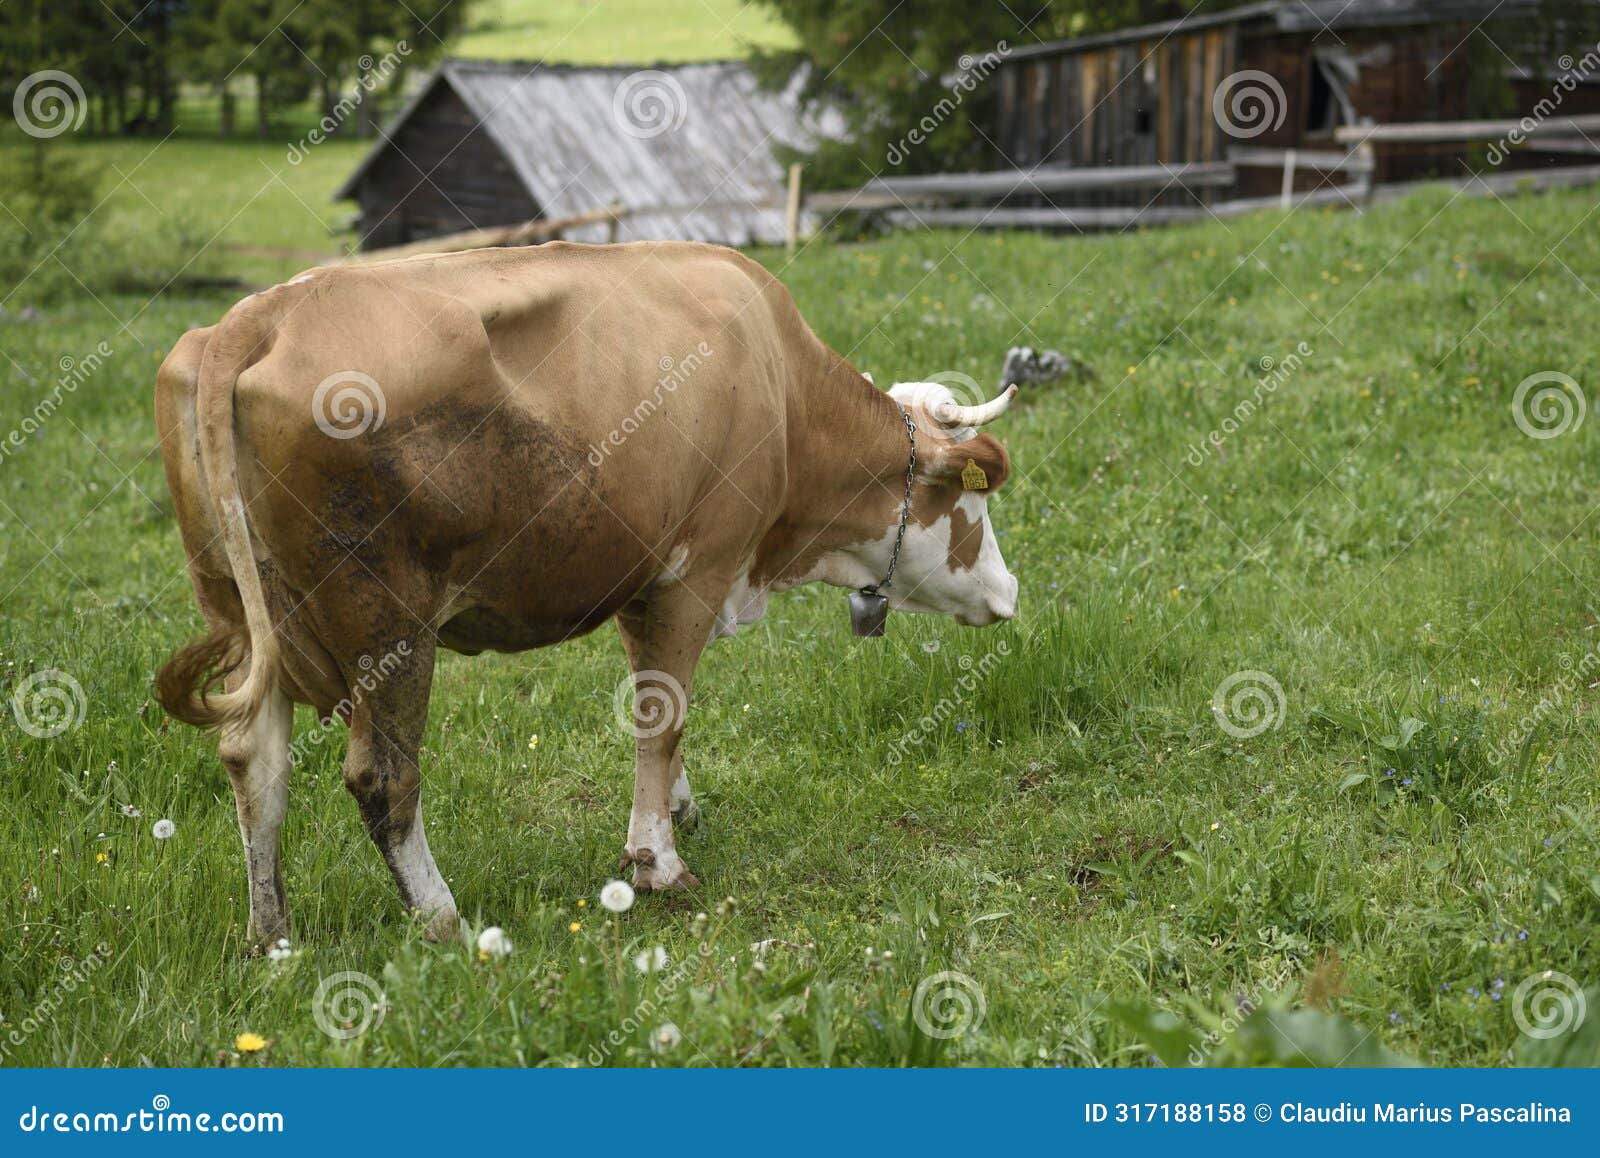 cow in the carpathian mountains, apuseni mountains, romania